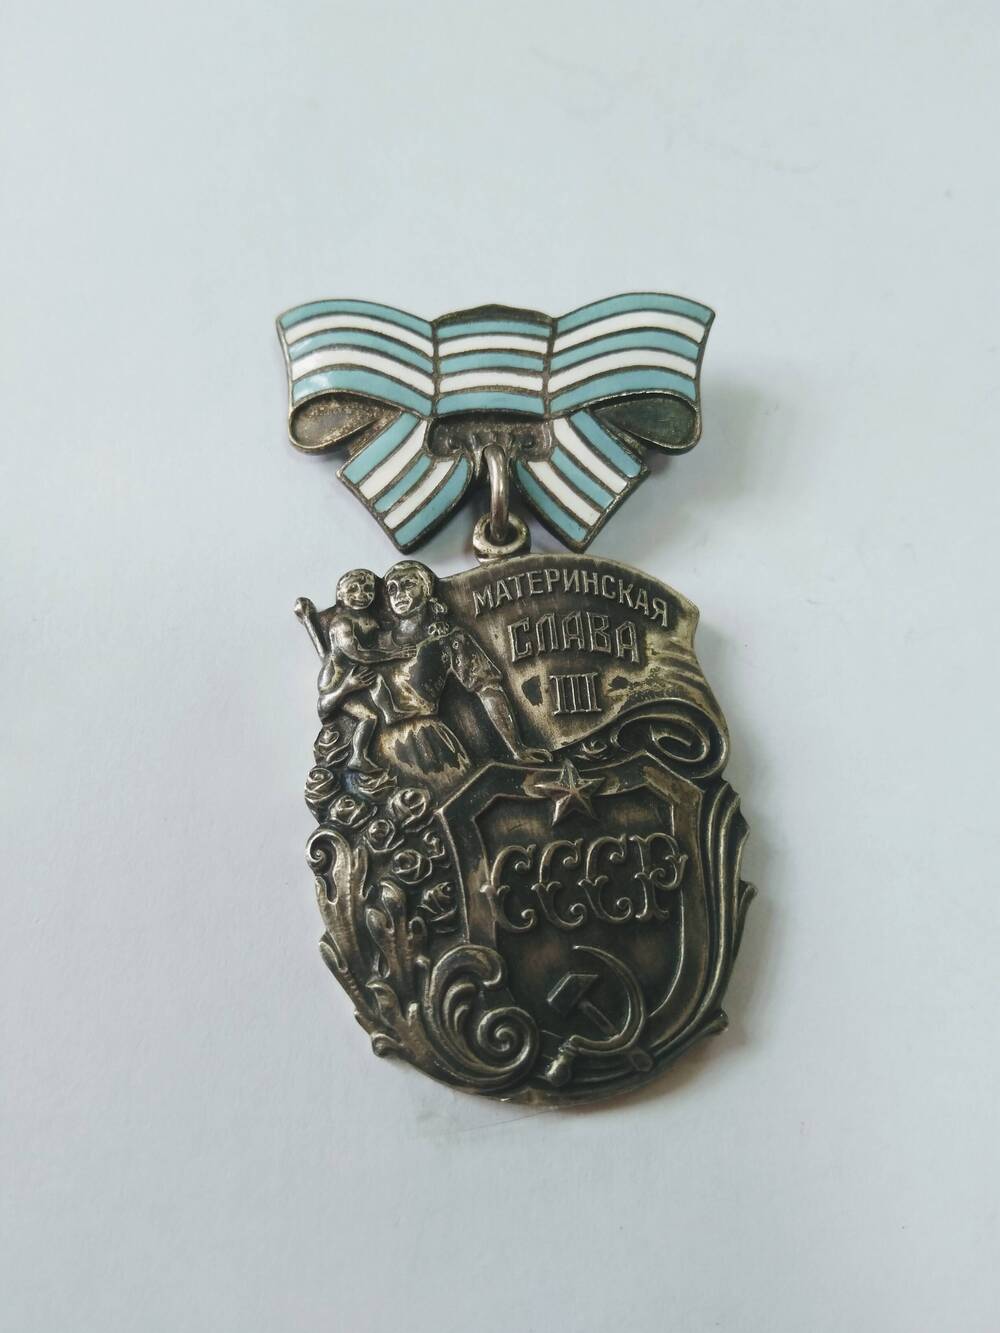 Орден Материнская слава III степени -  награда СССР, учреждённая в 1944 году.